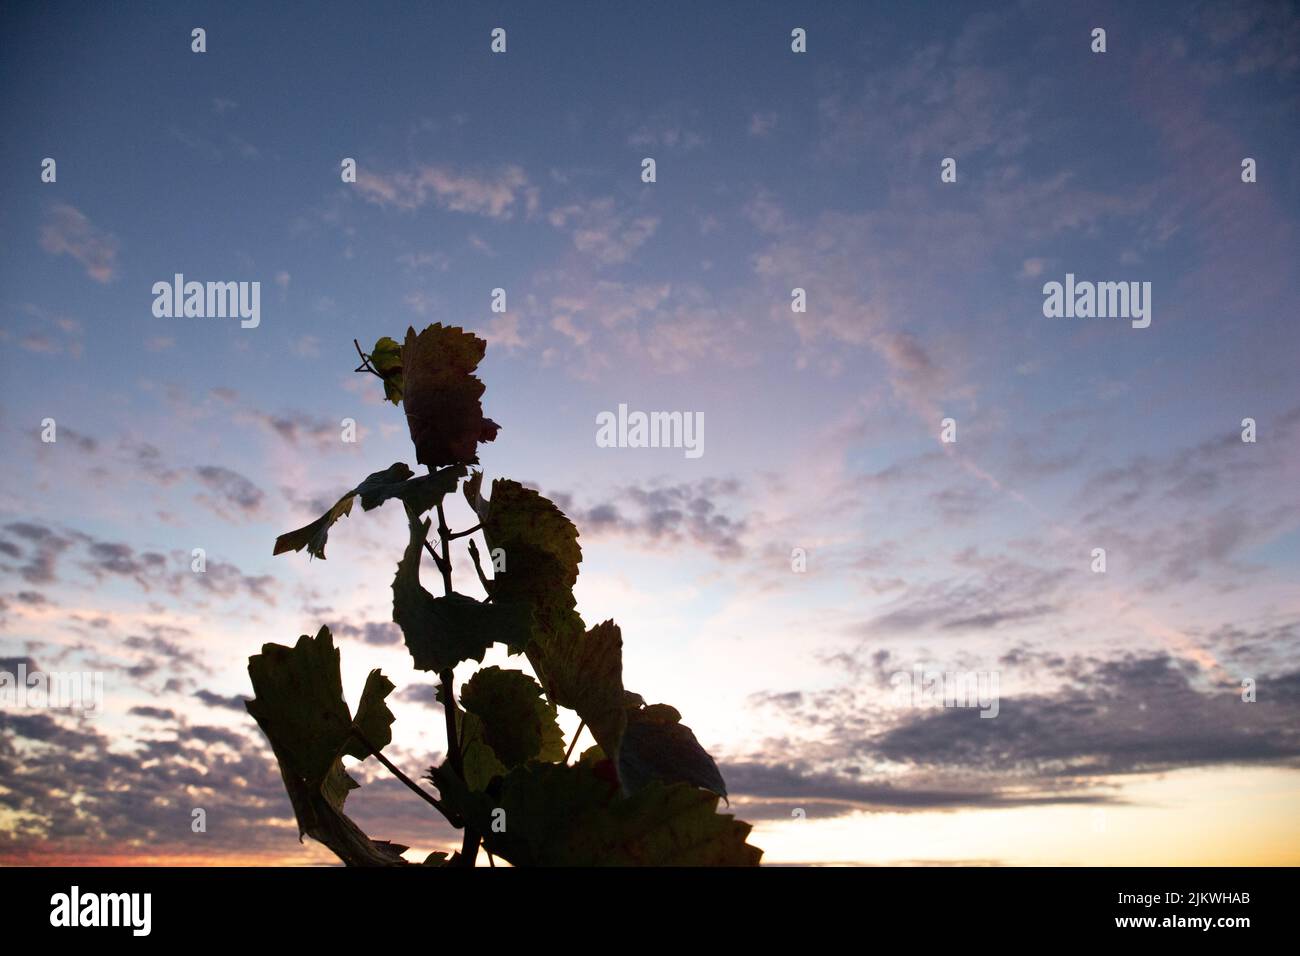 Une photo de la silhouette d'une vigne laisse sur un ciel nuageux au coucher du soleil Banque D'Images